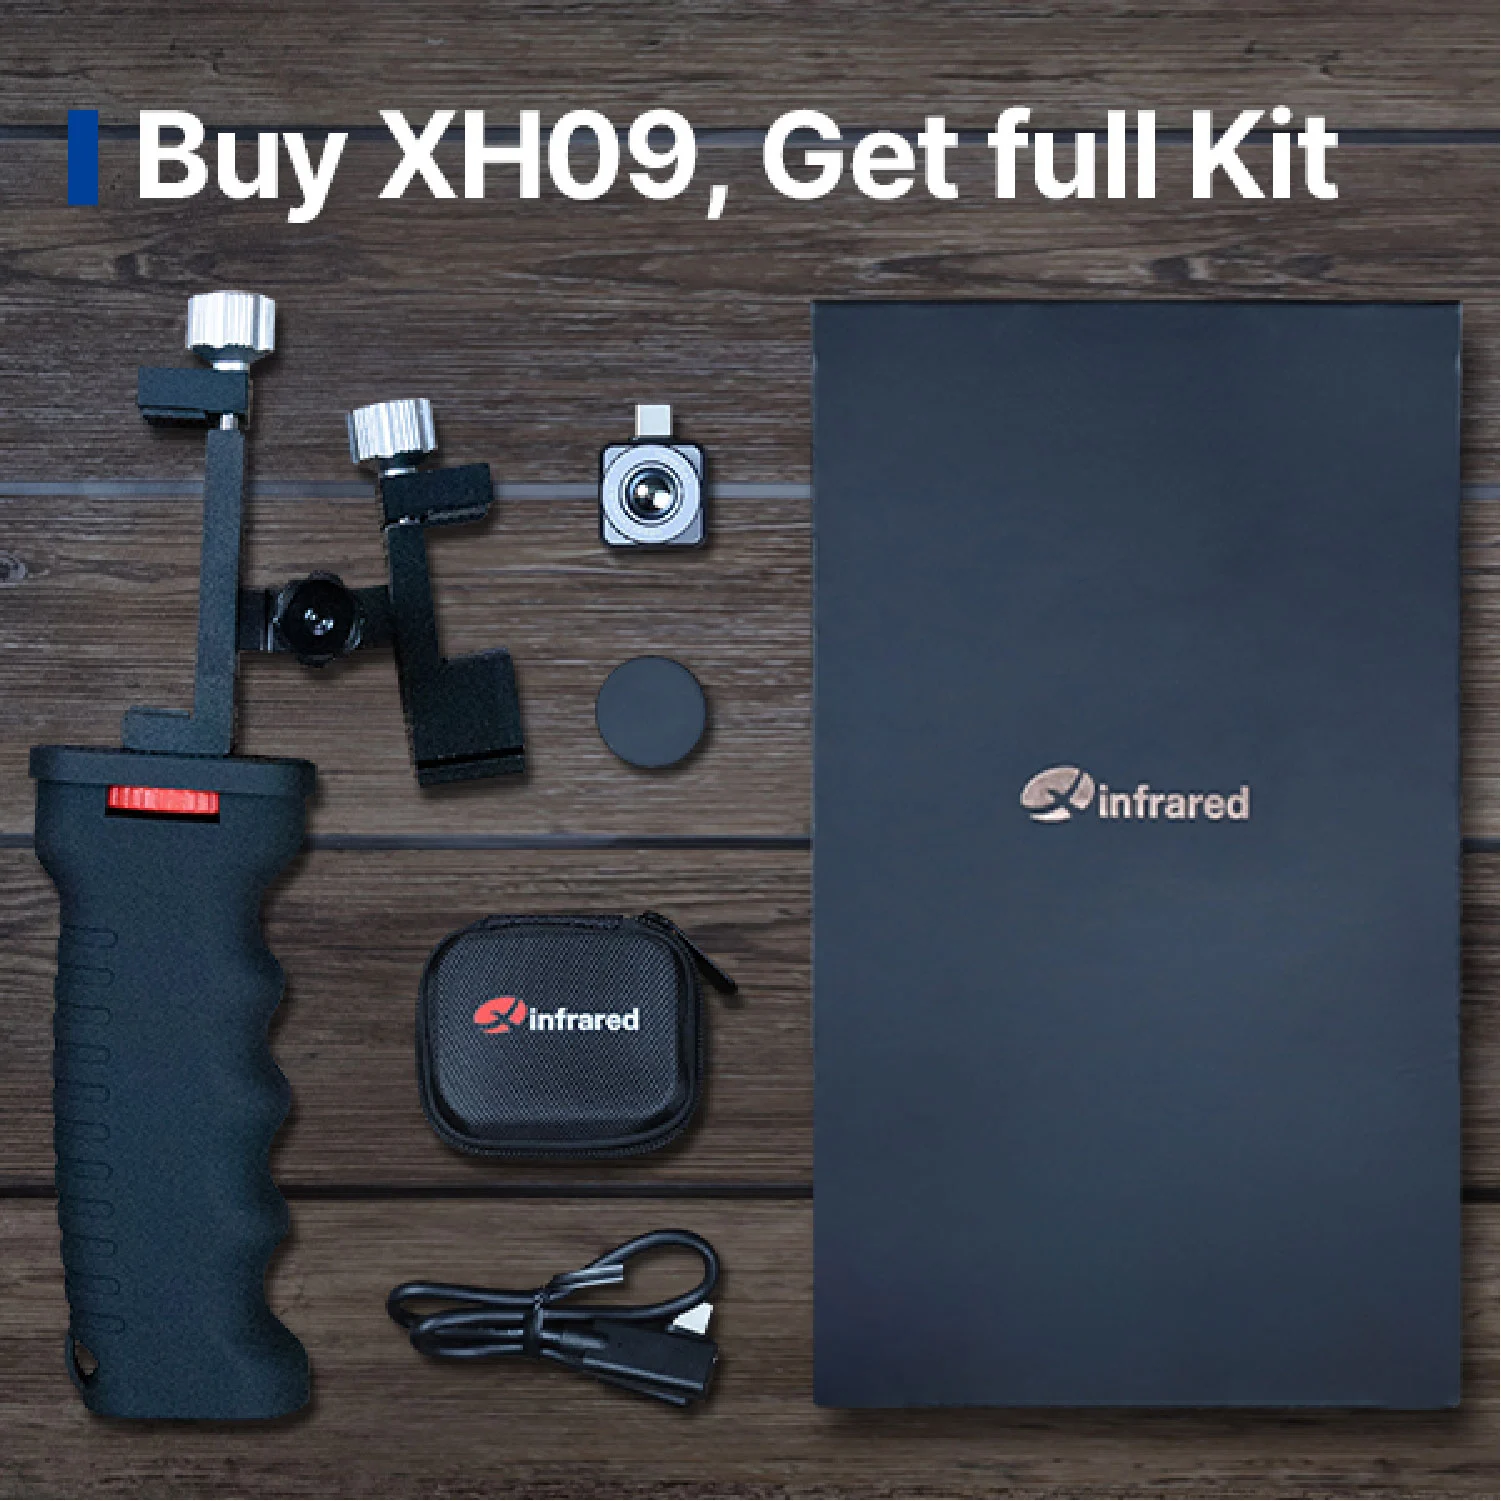 Comprar XH09, Obtener kit completo